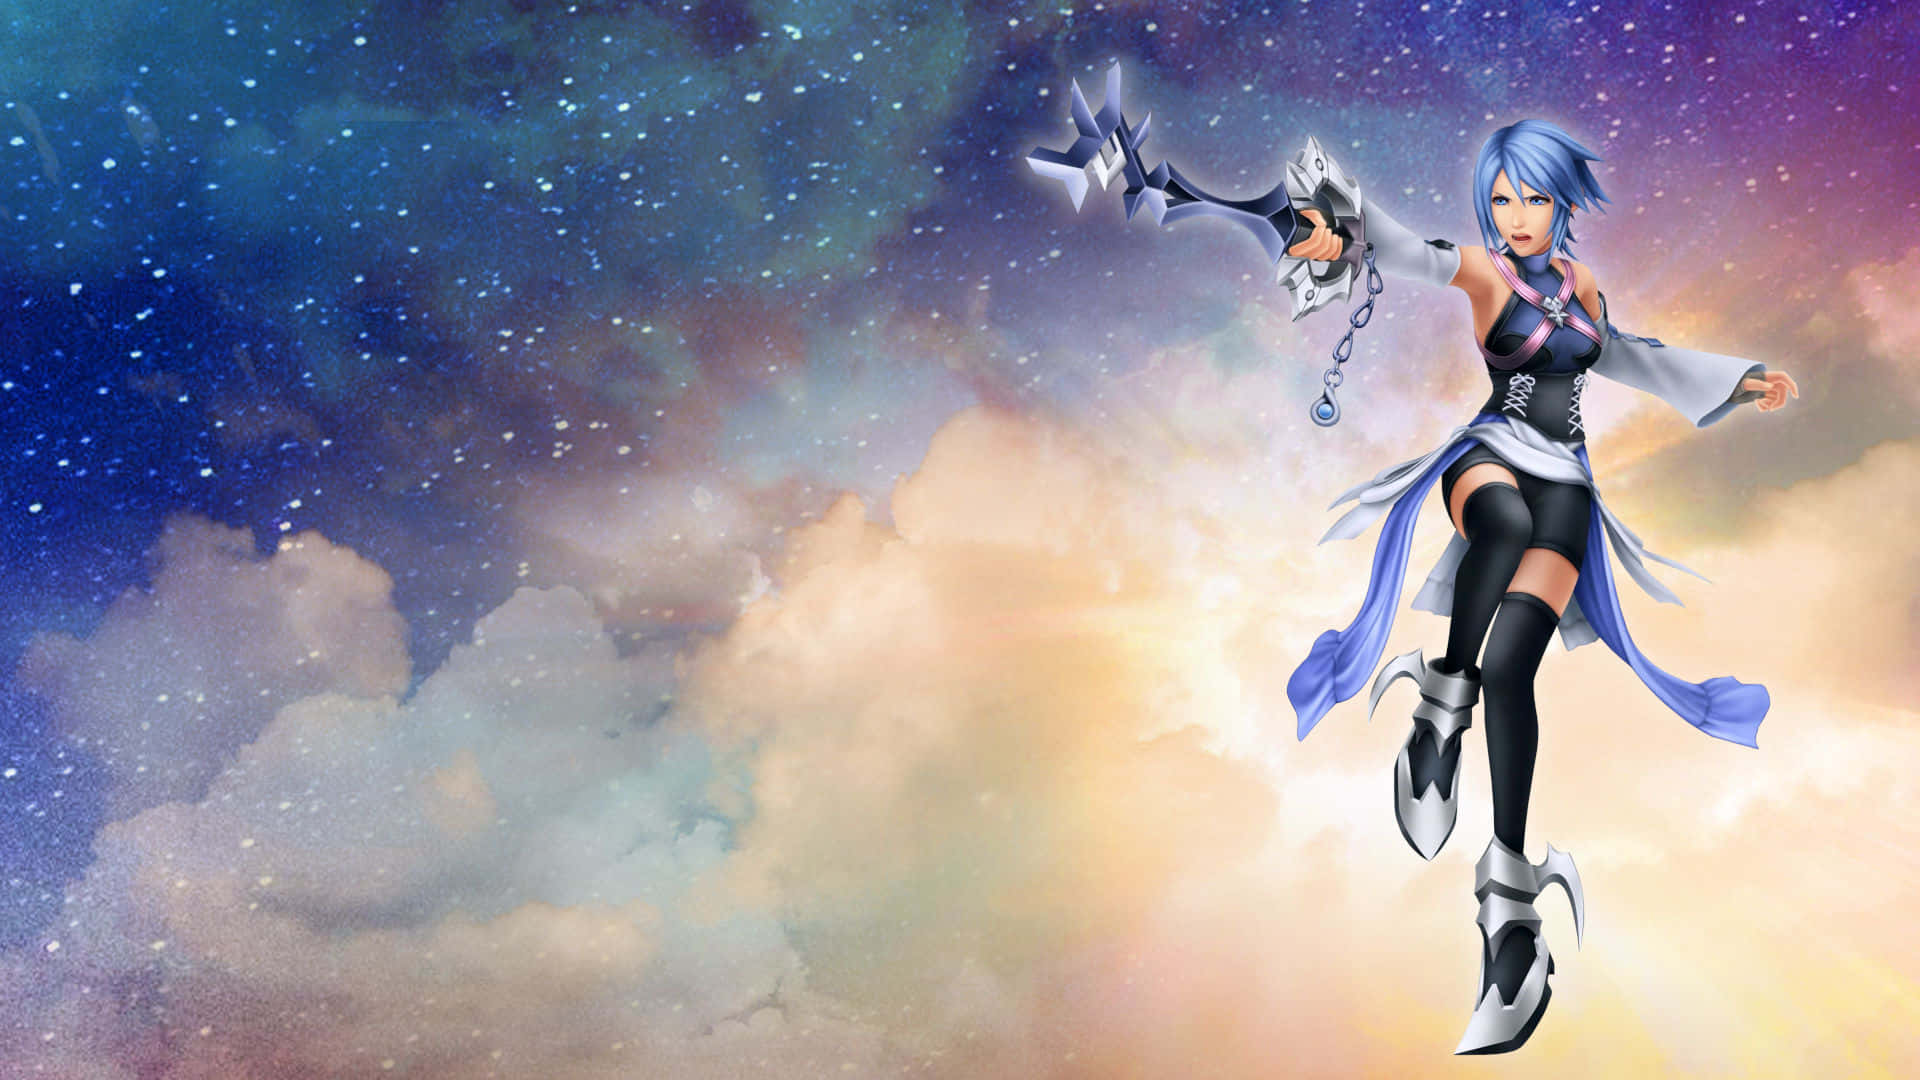 Aqua from Kingdom Hearts Wallpaper